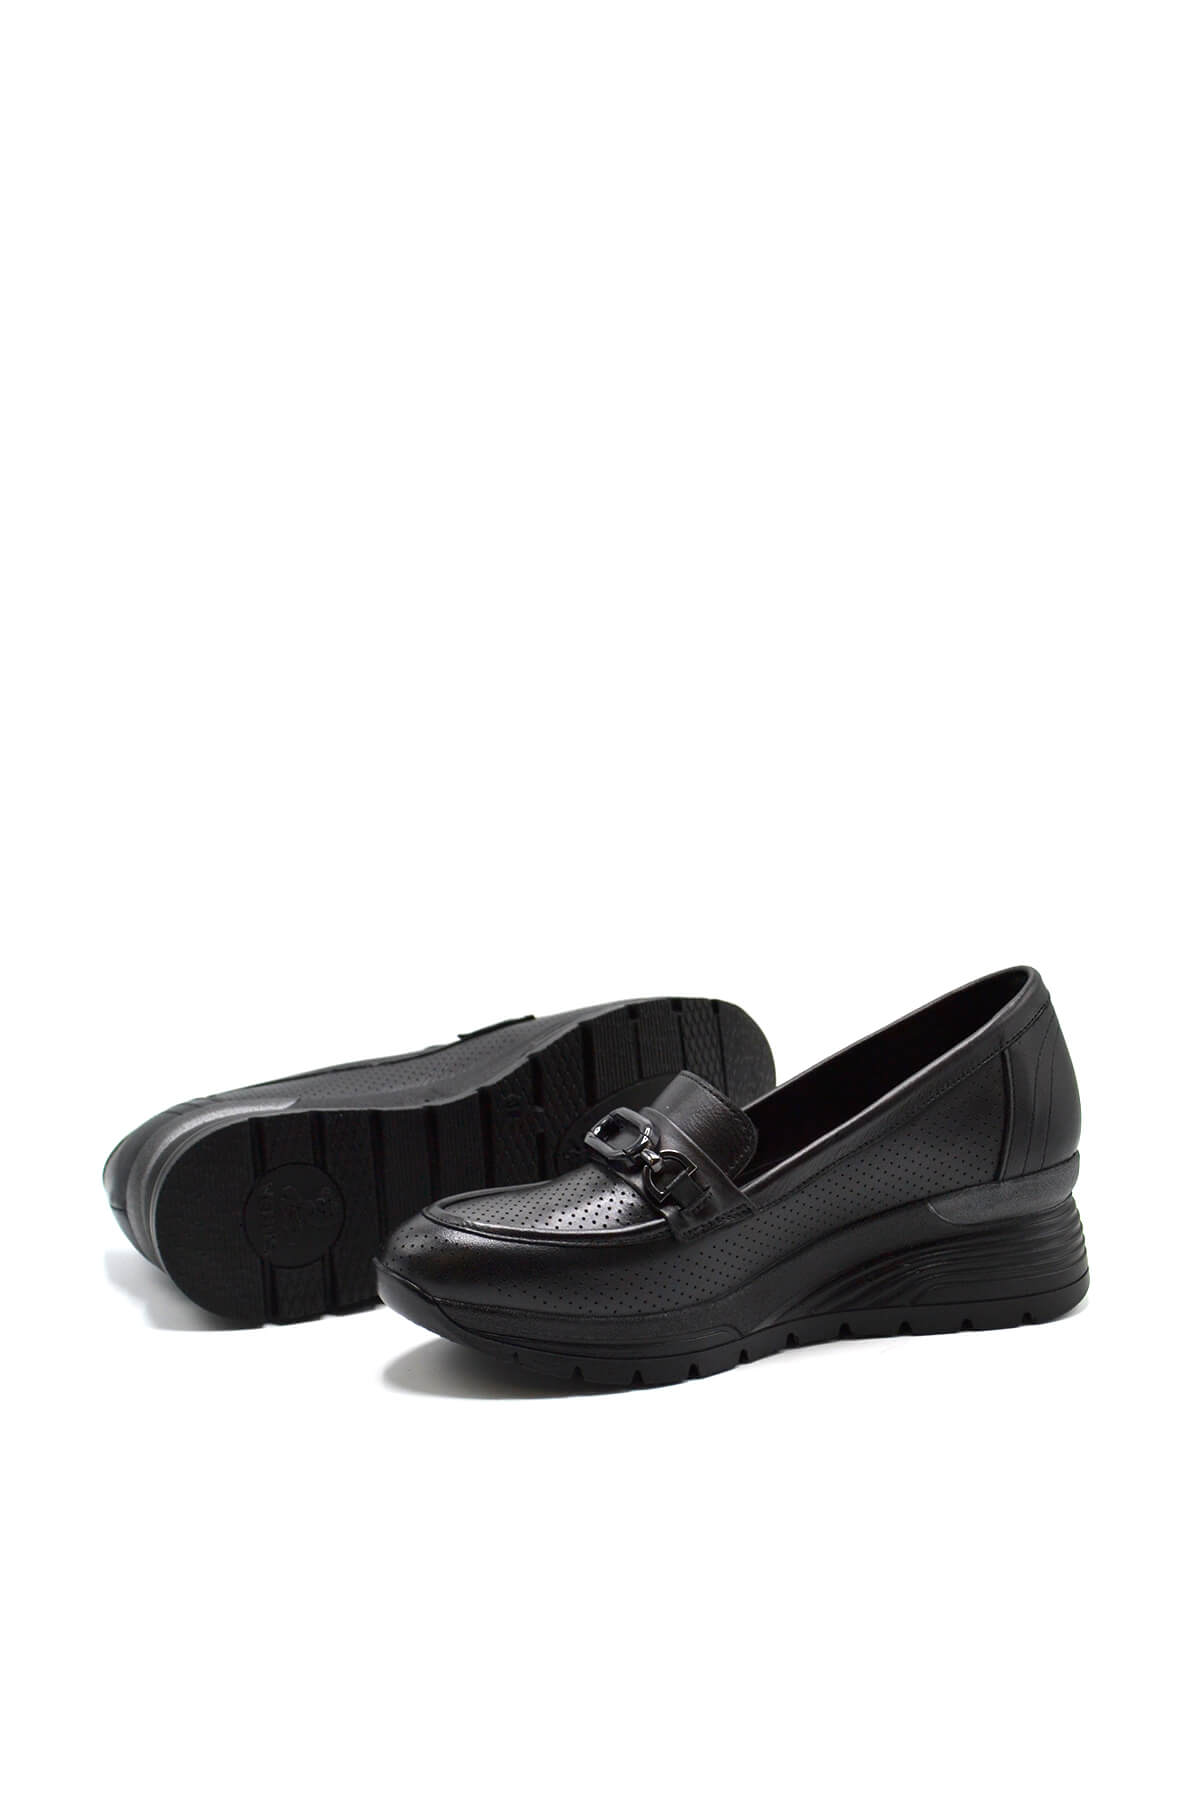 Kadın Airflow Deri Ayakkabı Siyah 2313001Y